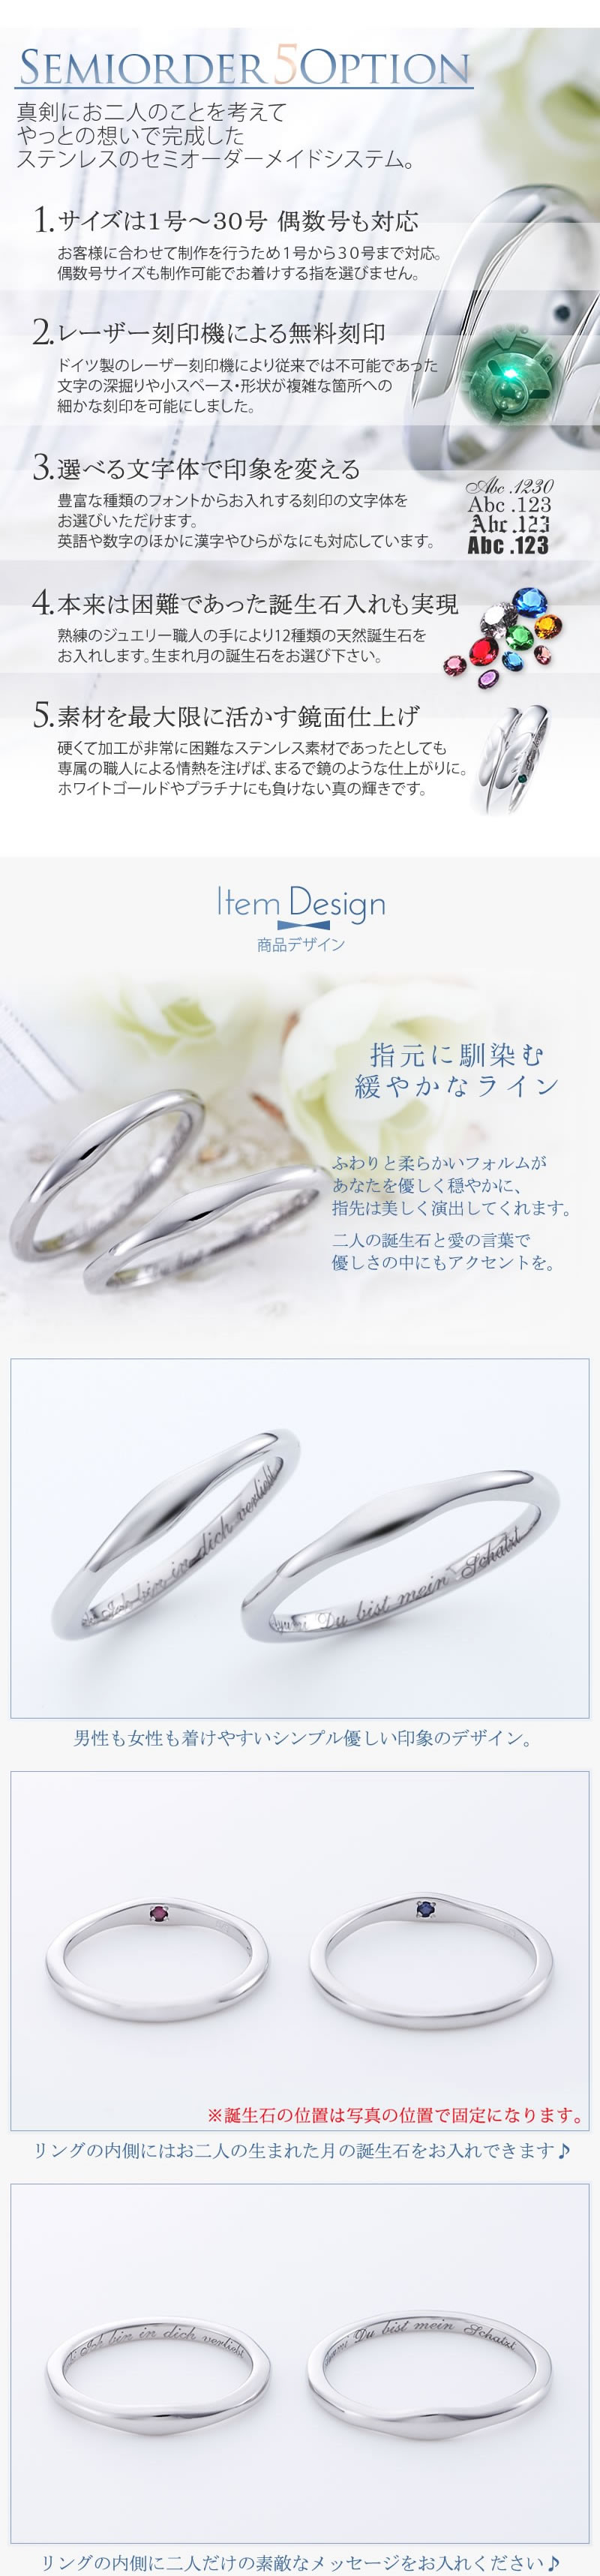 【結婚指輪】セミオーダーメイドステンレスリング ST110R-KS